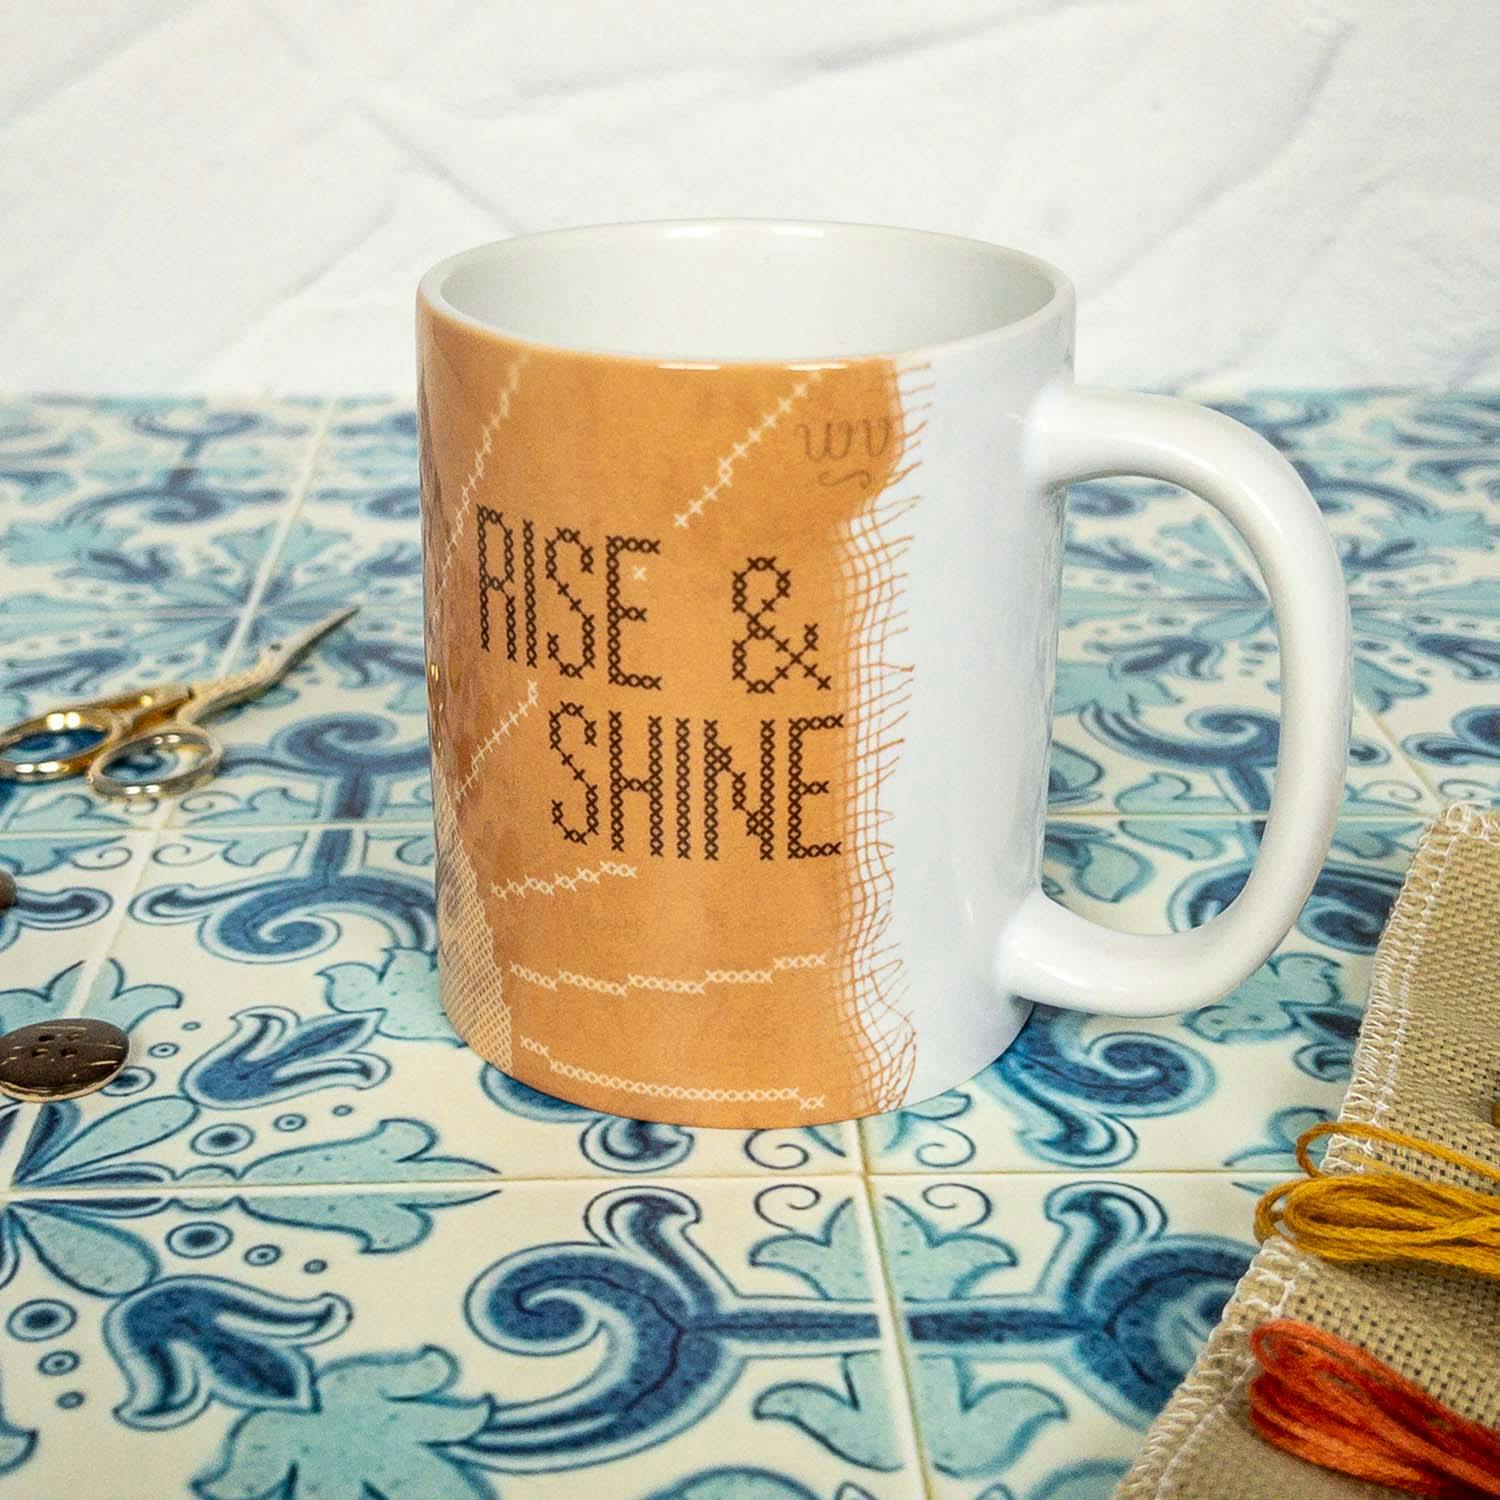 Rise and Shine Ceramic Mug